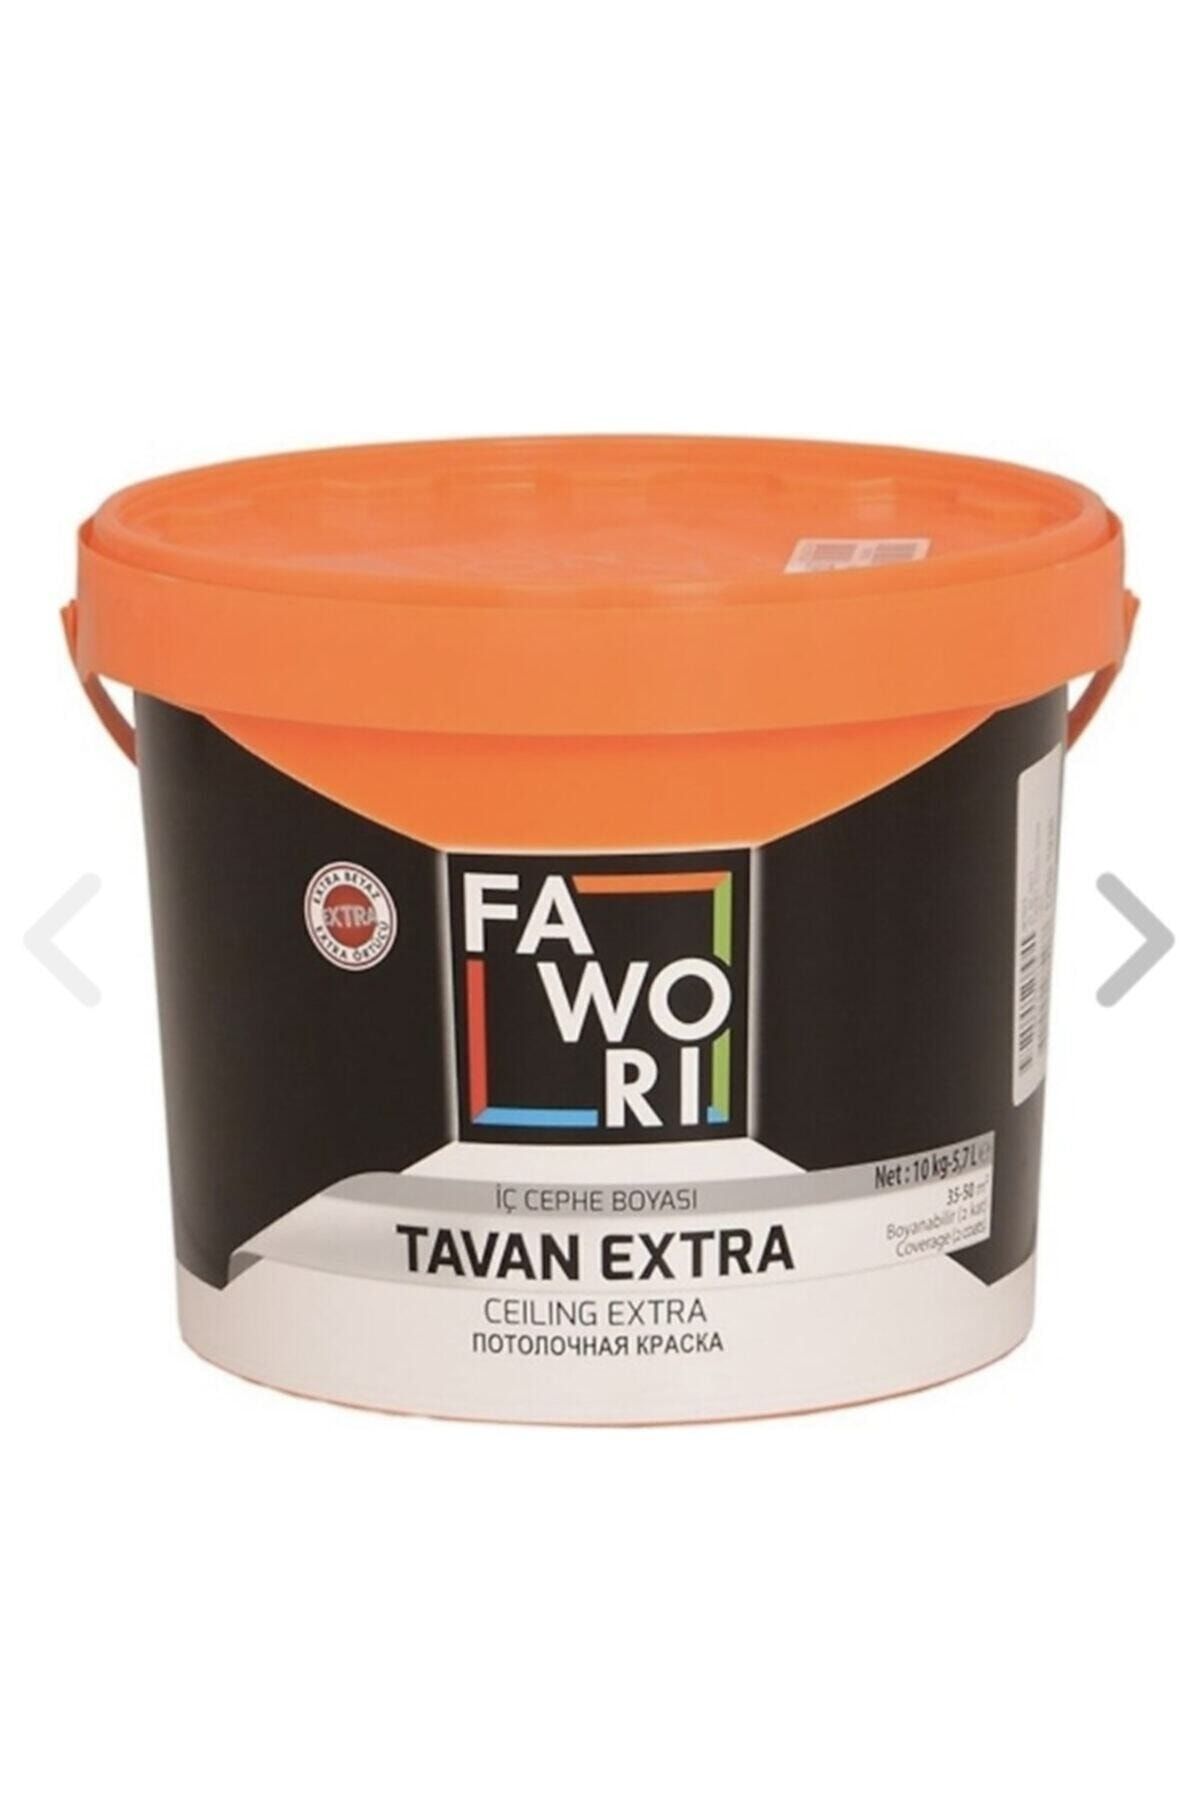 Favori Fawori Tavan Extra 10 kg